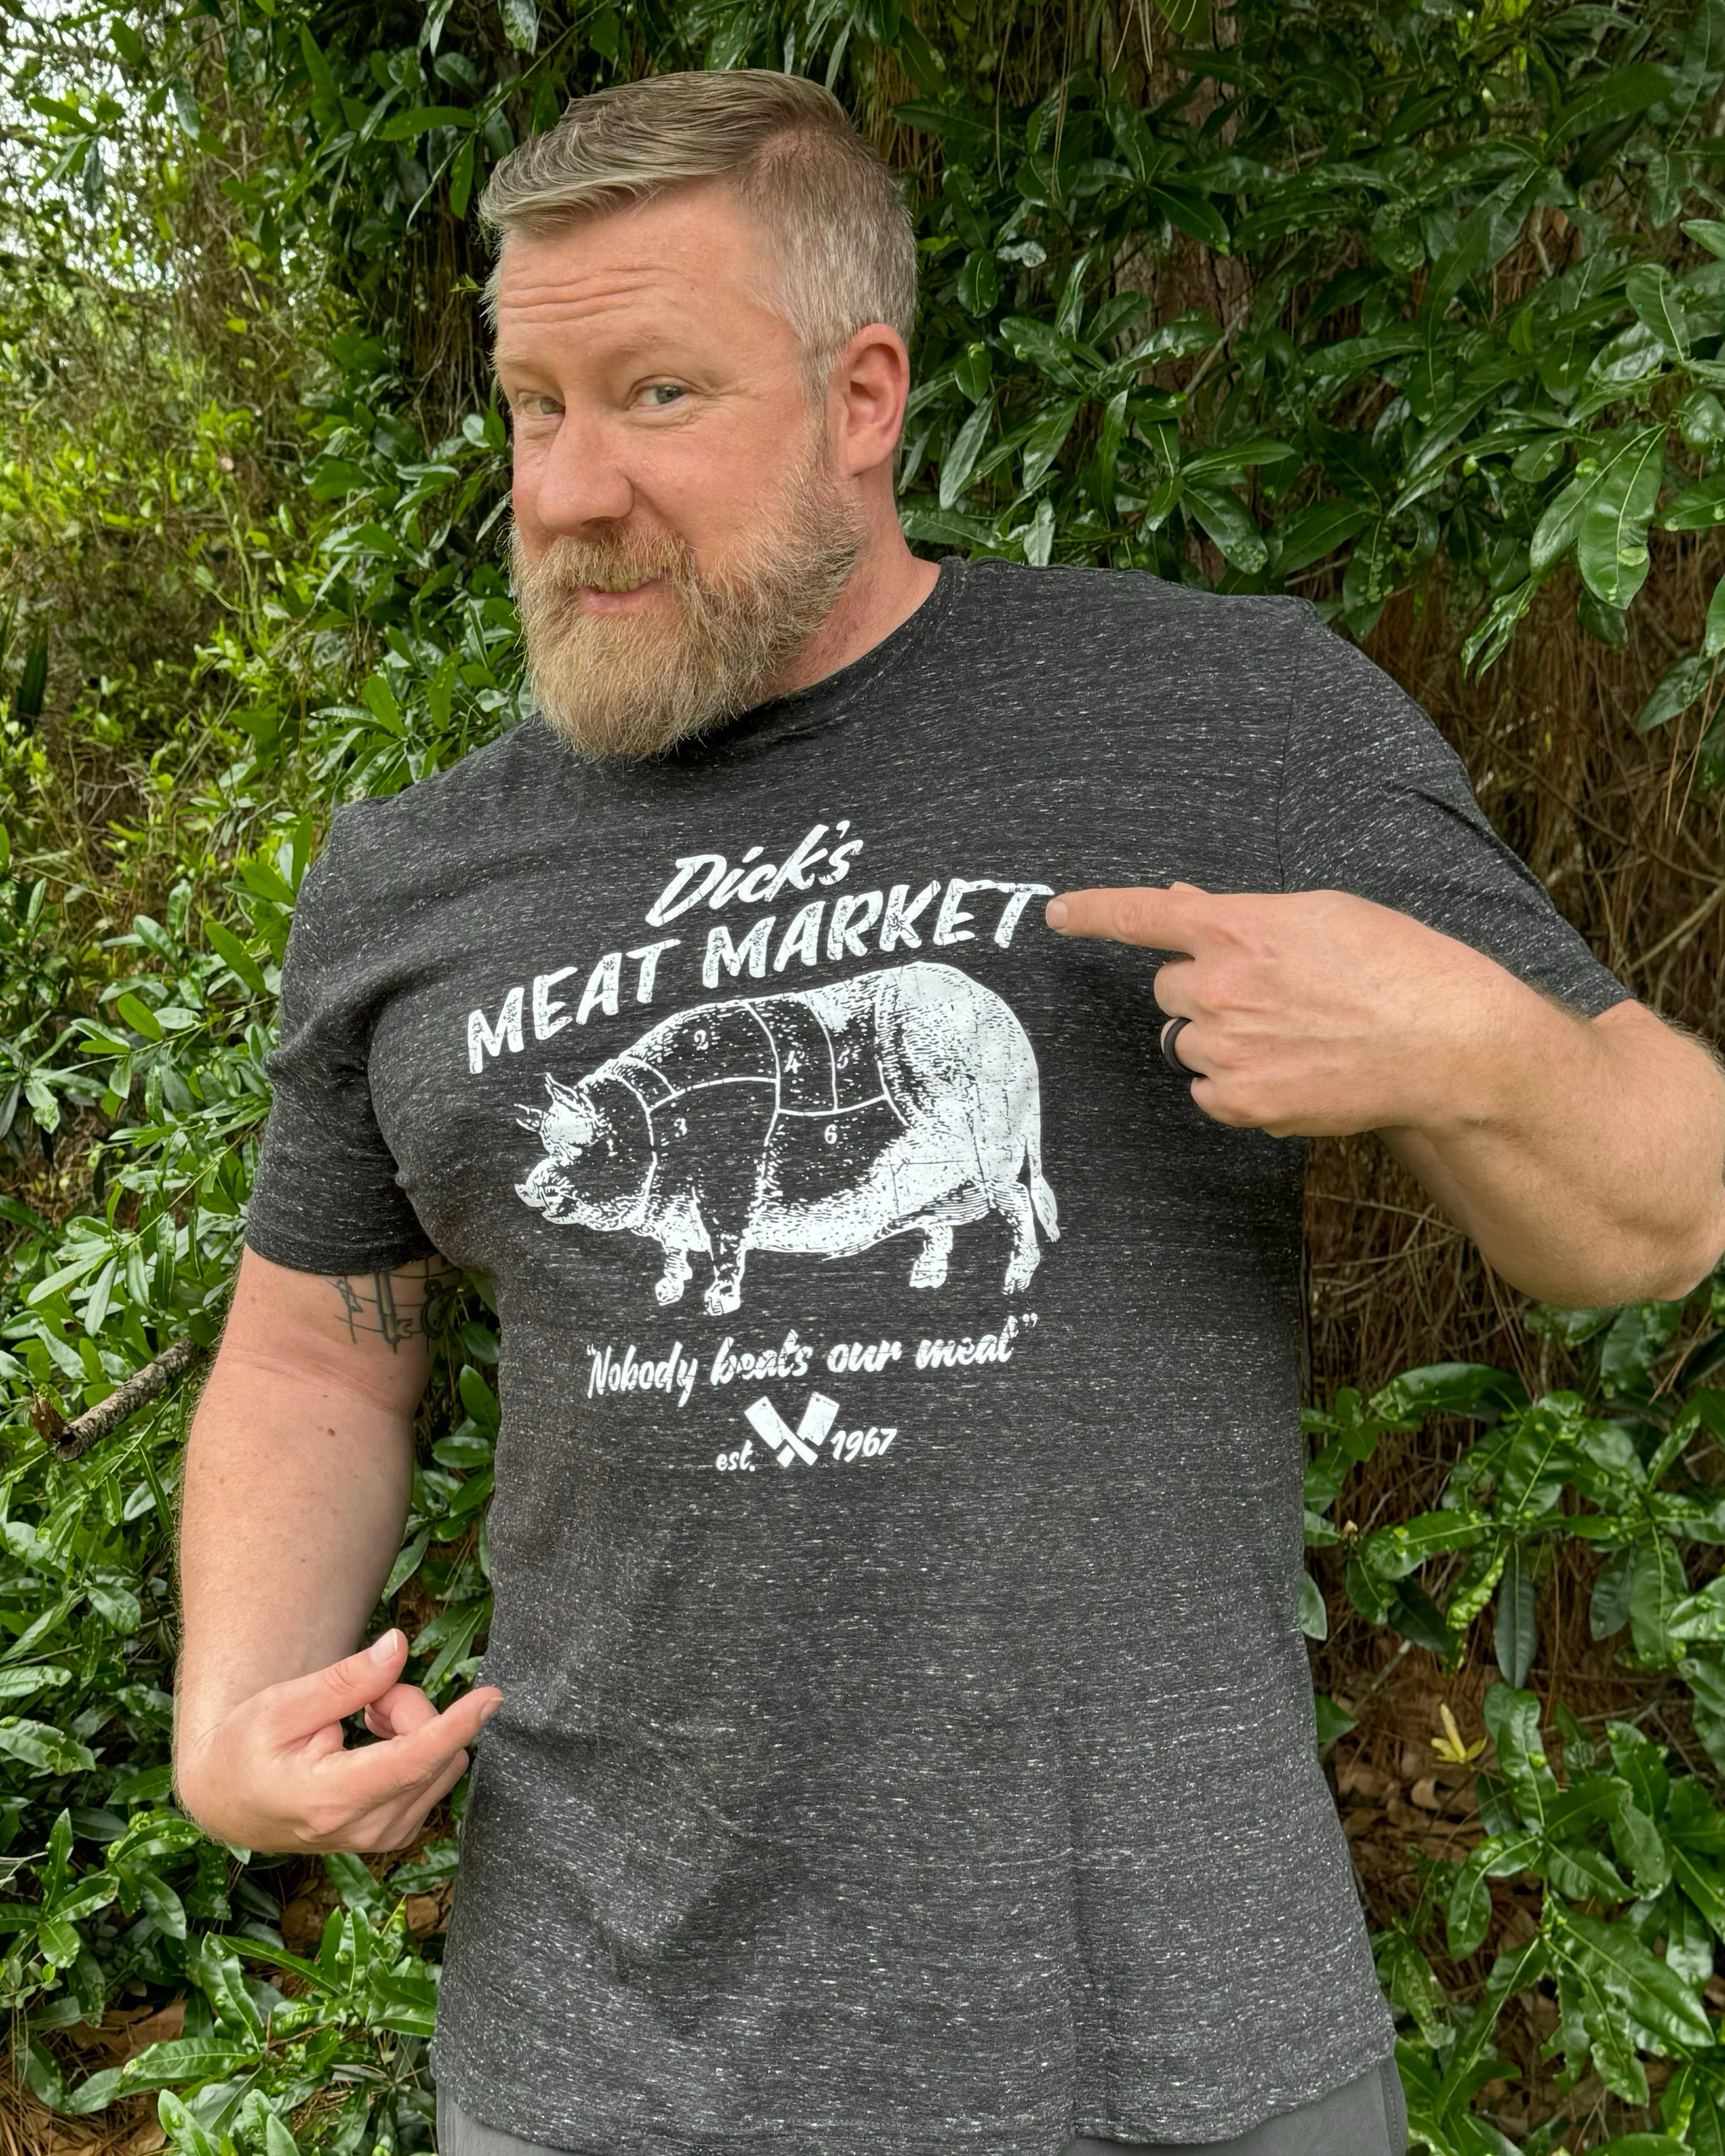 Dick's Meat Market Men's Shirt (Black Heather Crew)